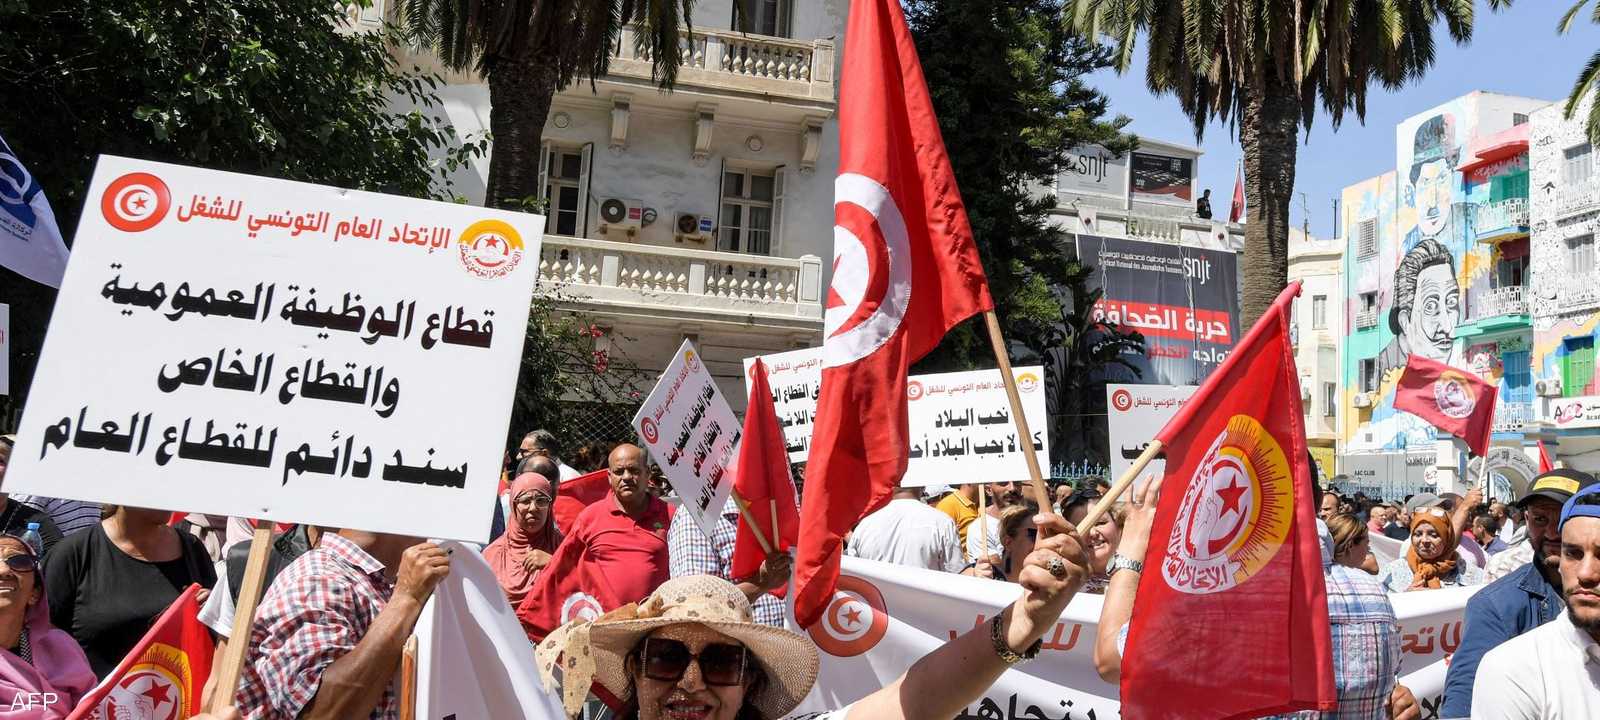 الشوارع التونسية تشهد تظاهرات عارمة ضد قرارات الرئيس